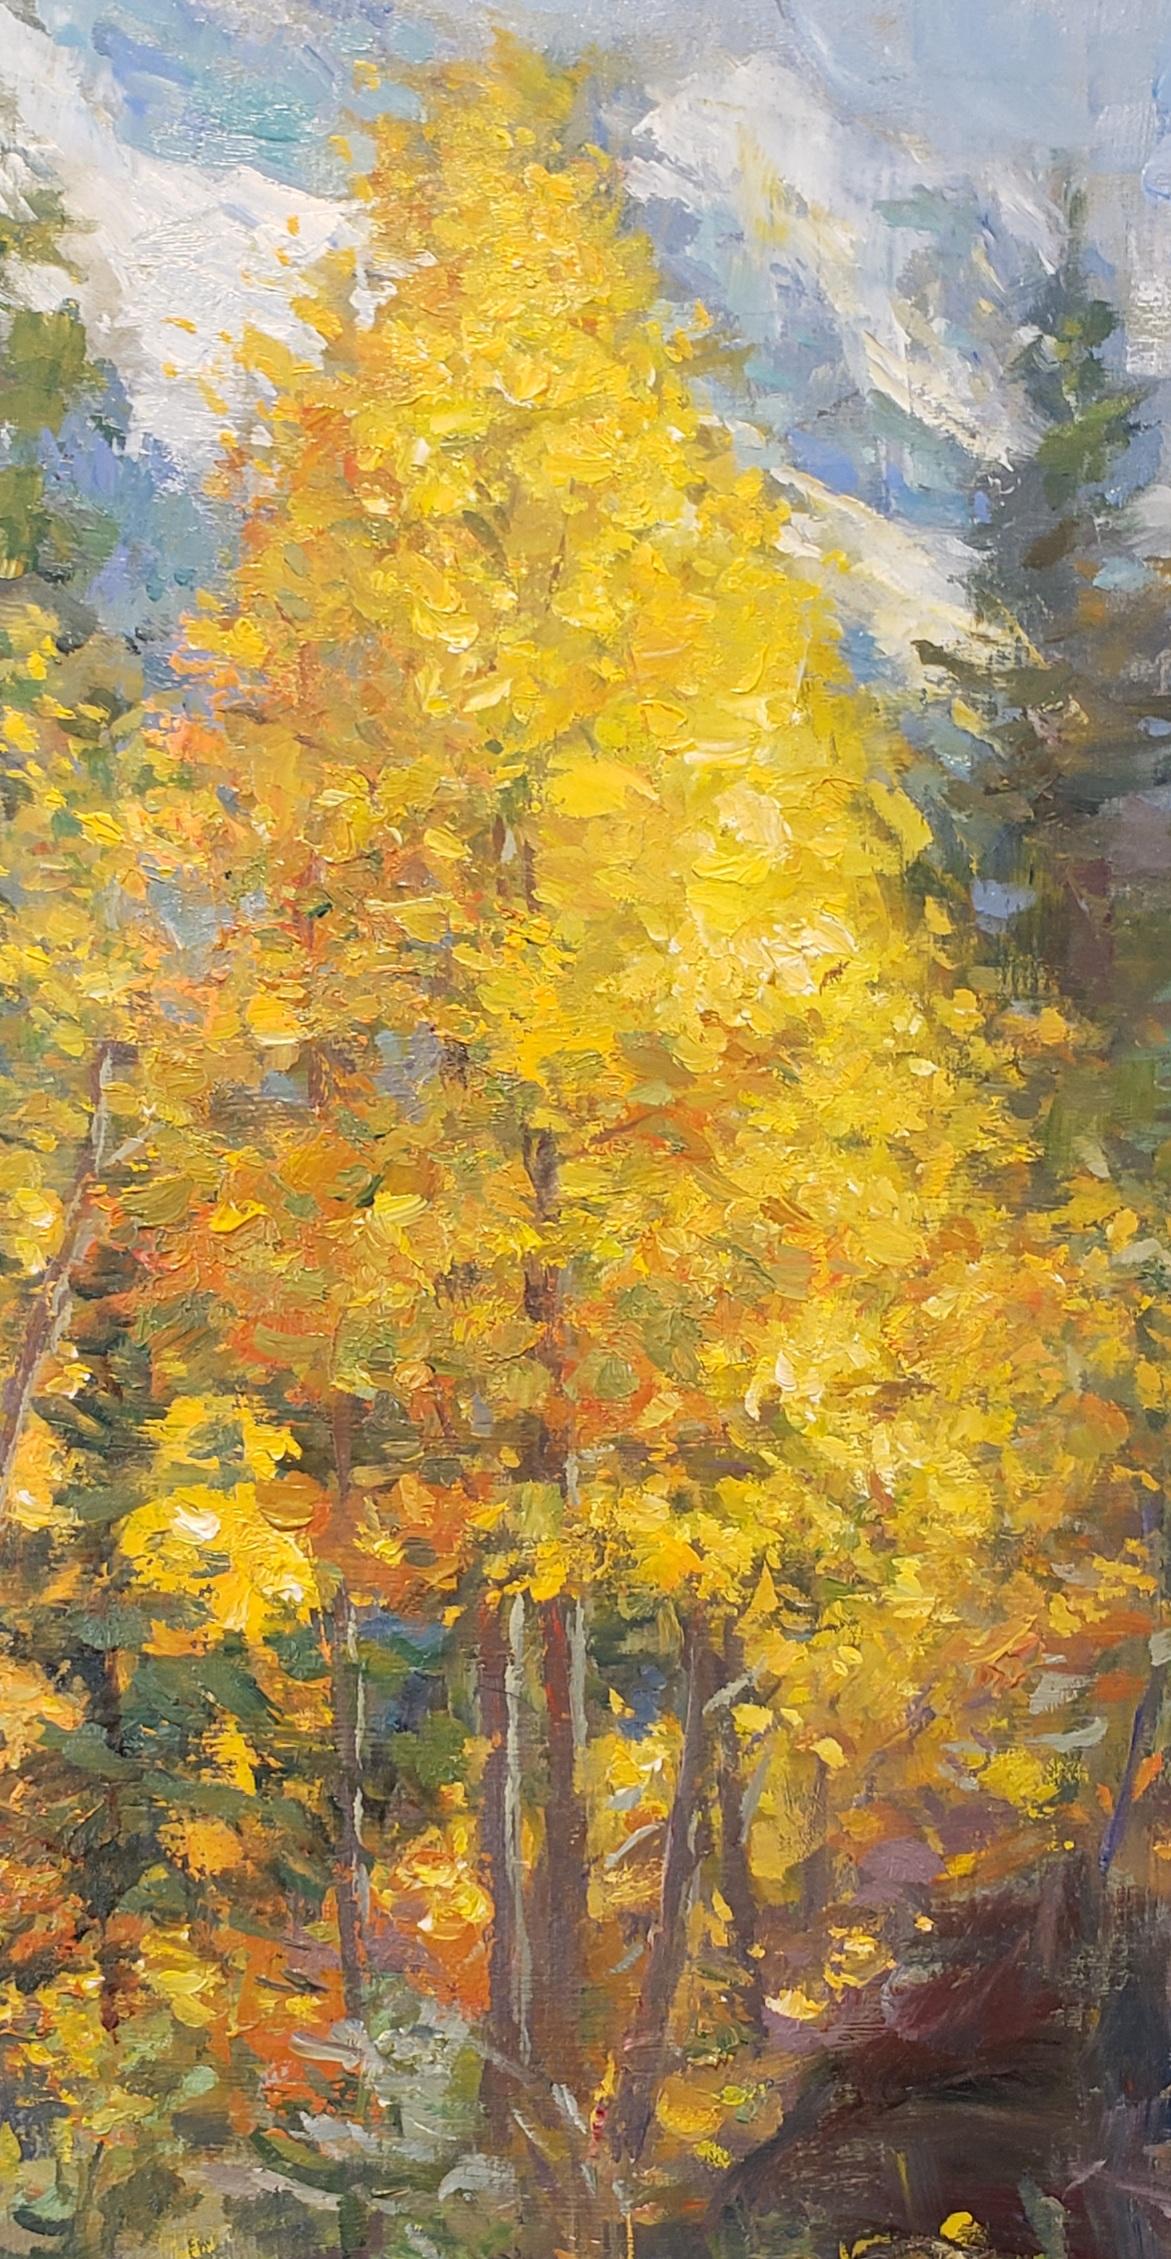 Abstrakte Landschaft, Ölgemälde, texasischer Künstler, Western-Kunst, Colorado Rockies (Braun), Landscape Painting, von William Kalwick